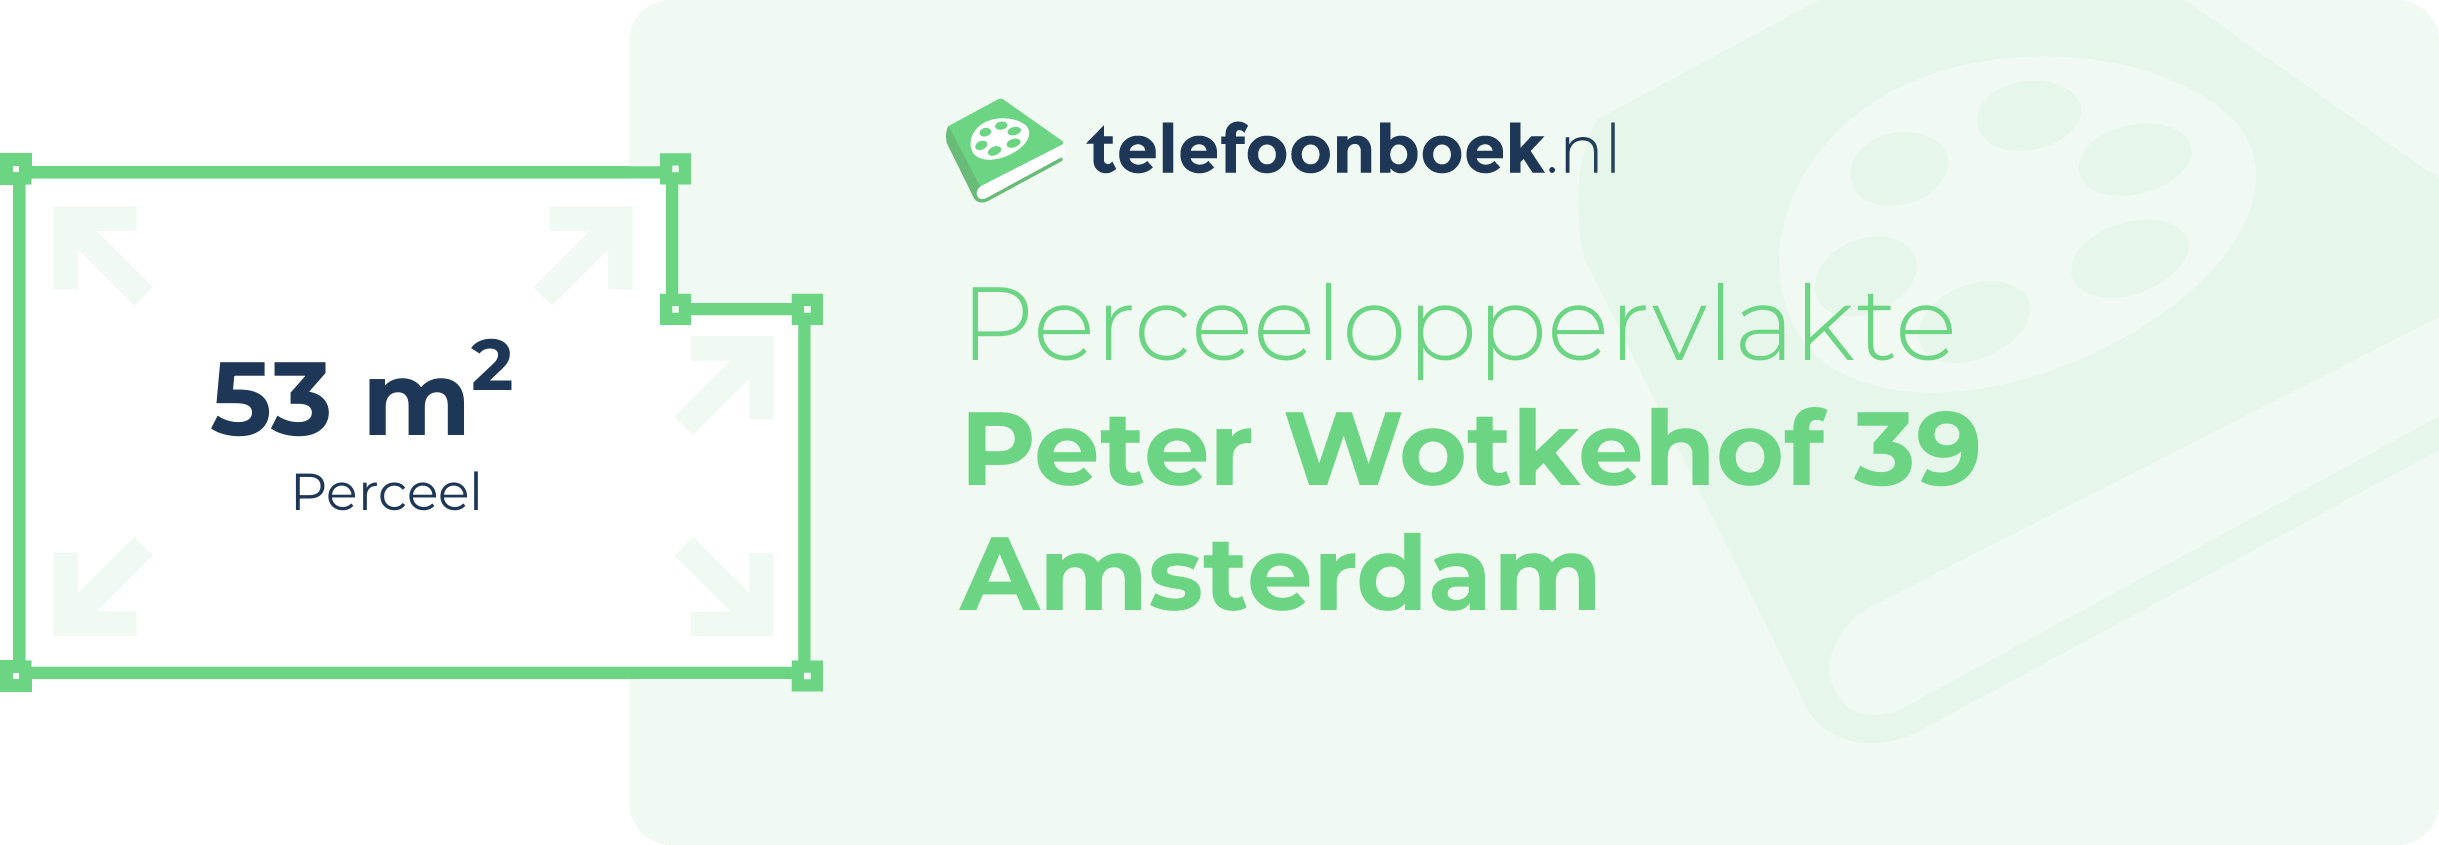 Perceeloppervlakte Peter Wotkehof 39 Amsterdam